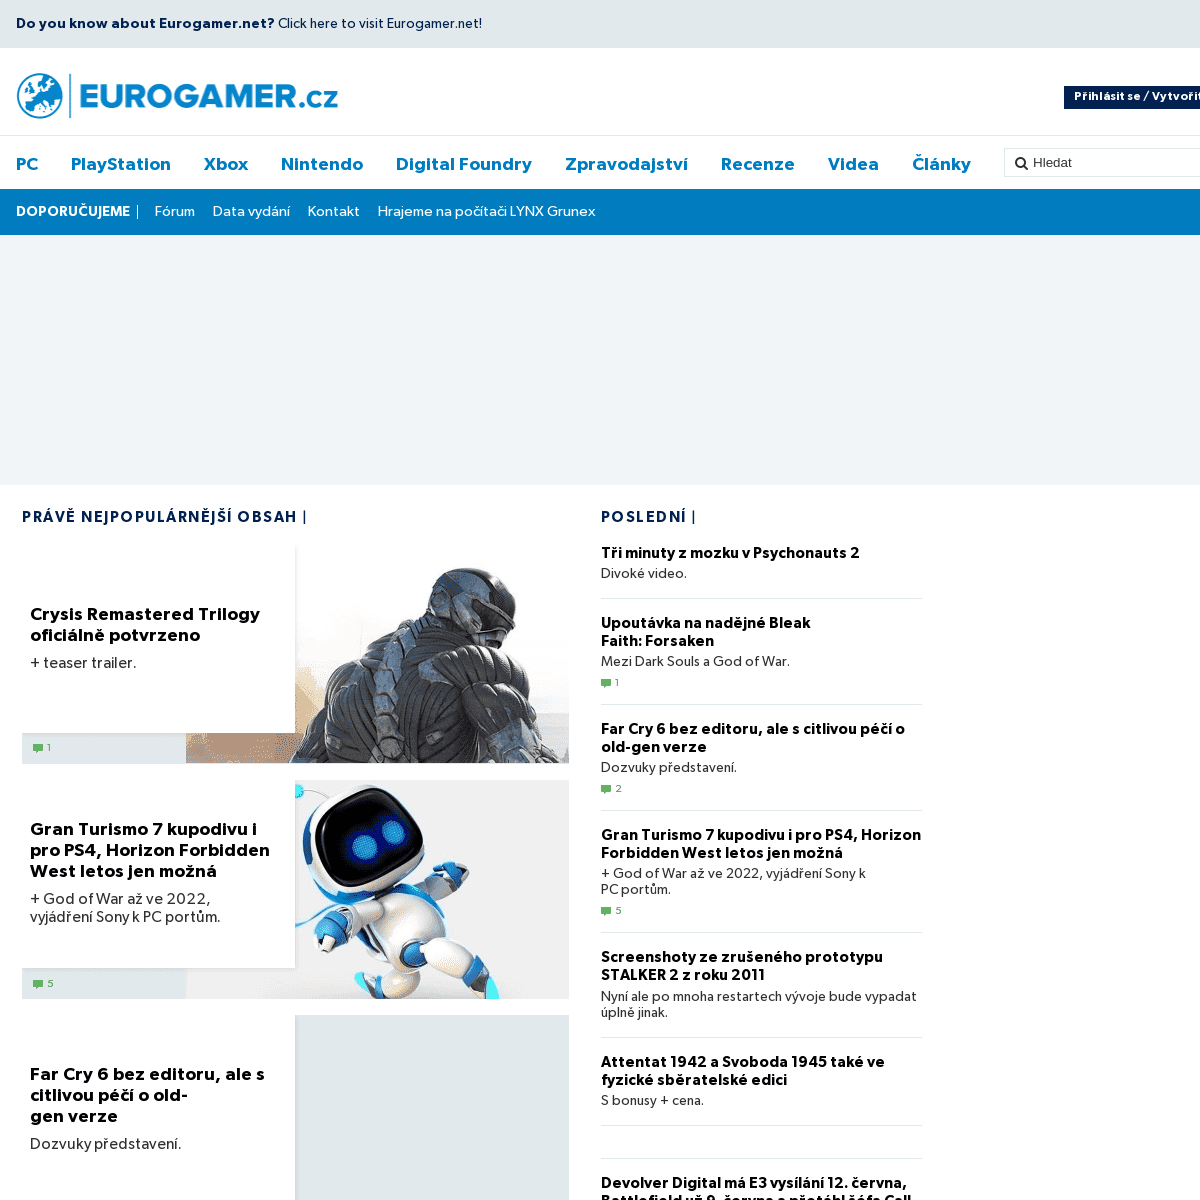 A complete backup of https://eurogamer.cz